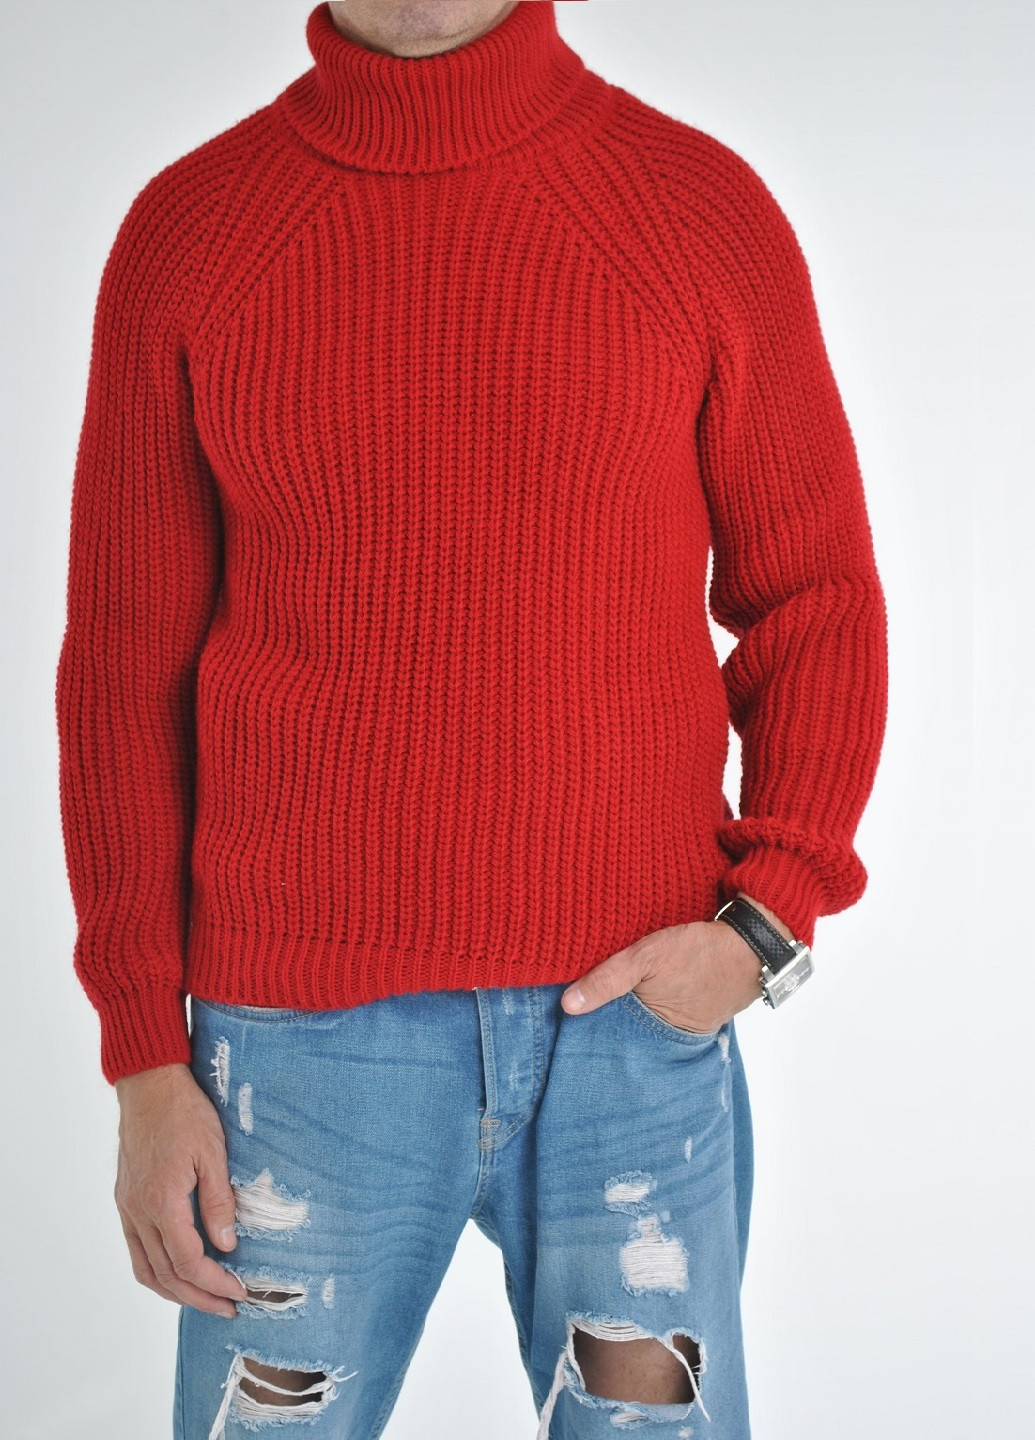 Красный зимний свитер крупной вязки Berta Lucci